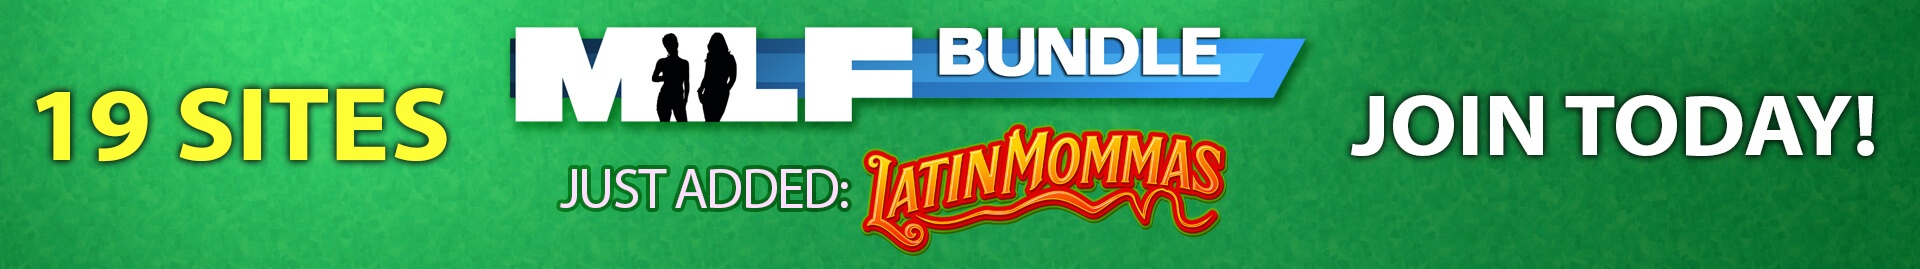 Latin Mommas - Join Now!